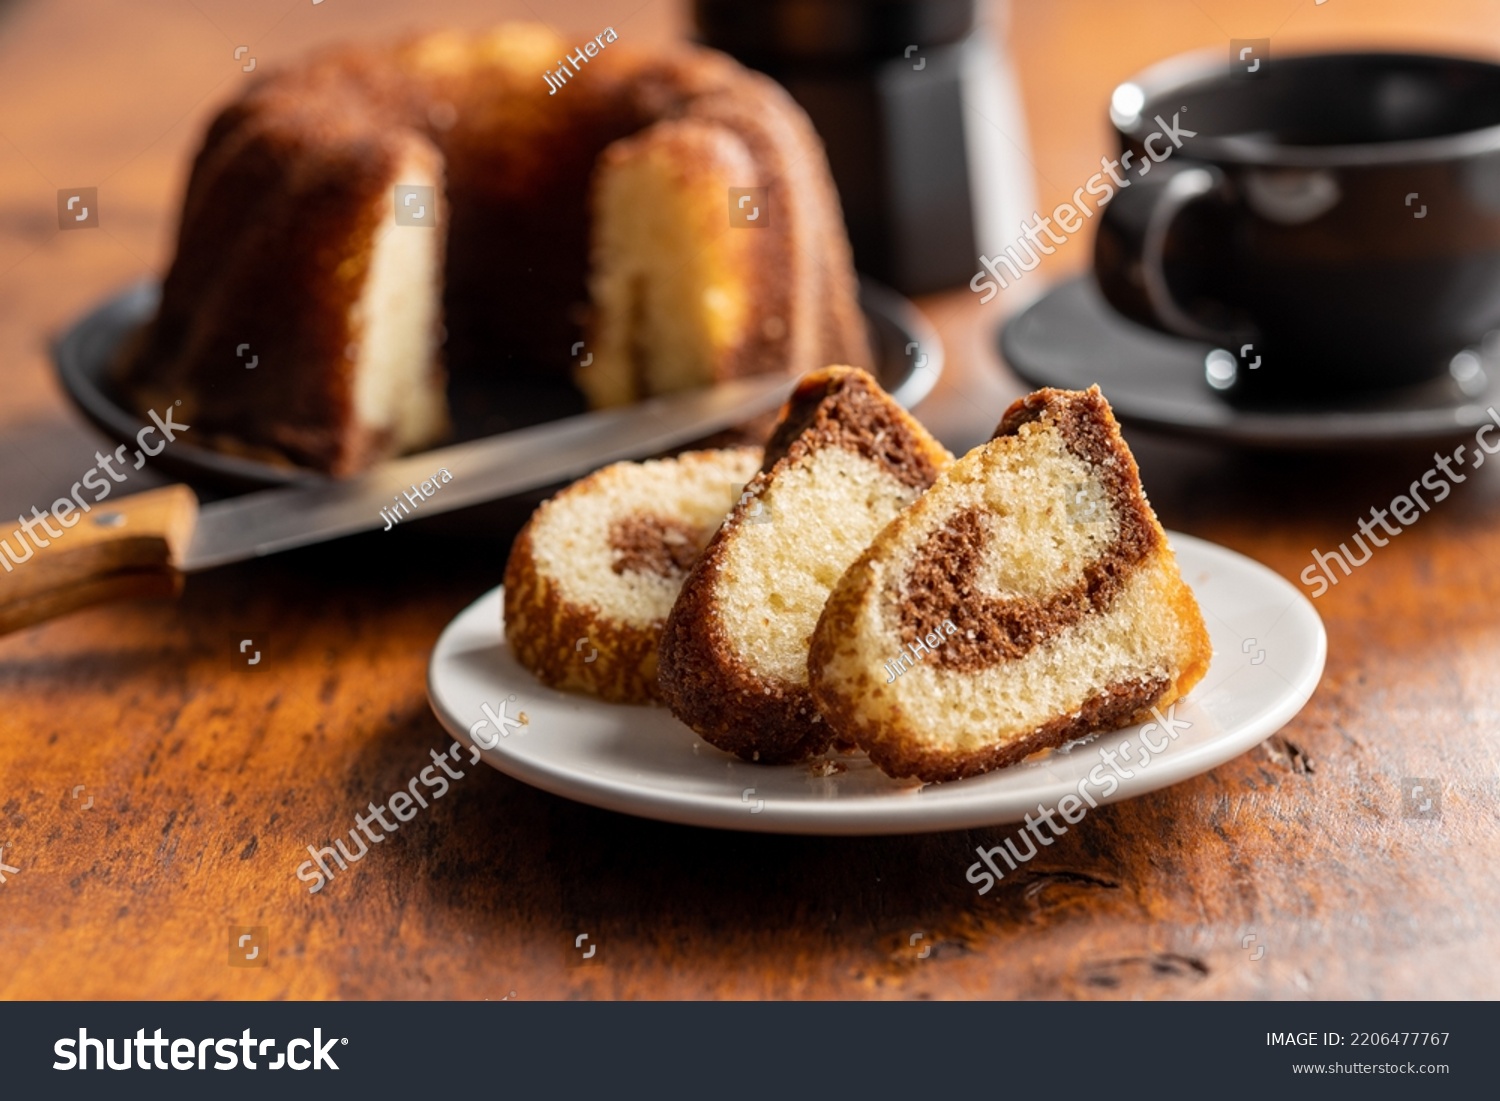 Sweet sponge cake. Bundt cake on the wooden table. #2206477767